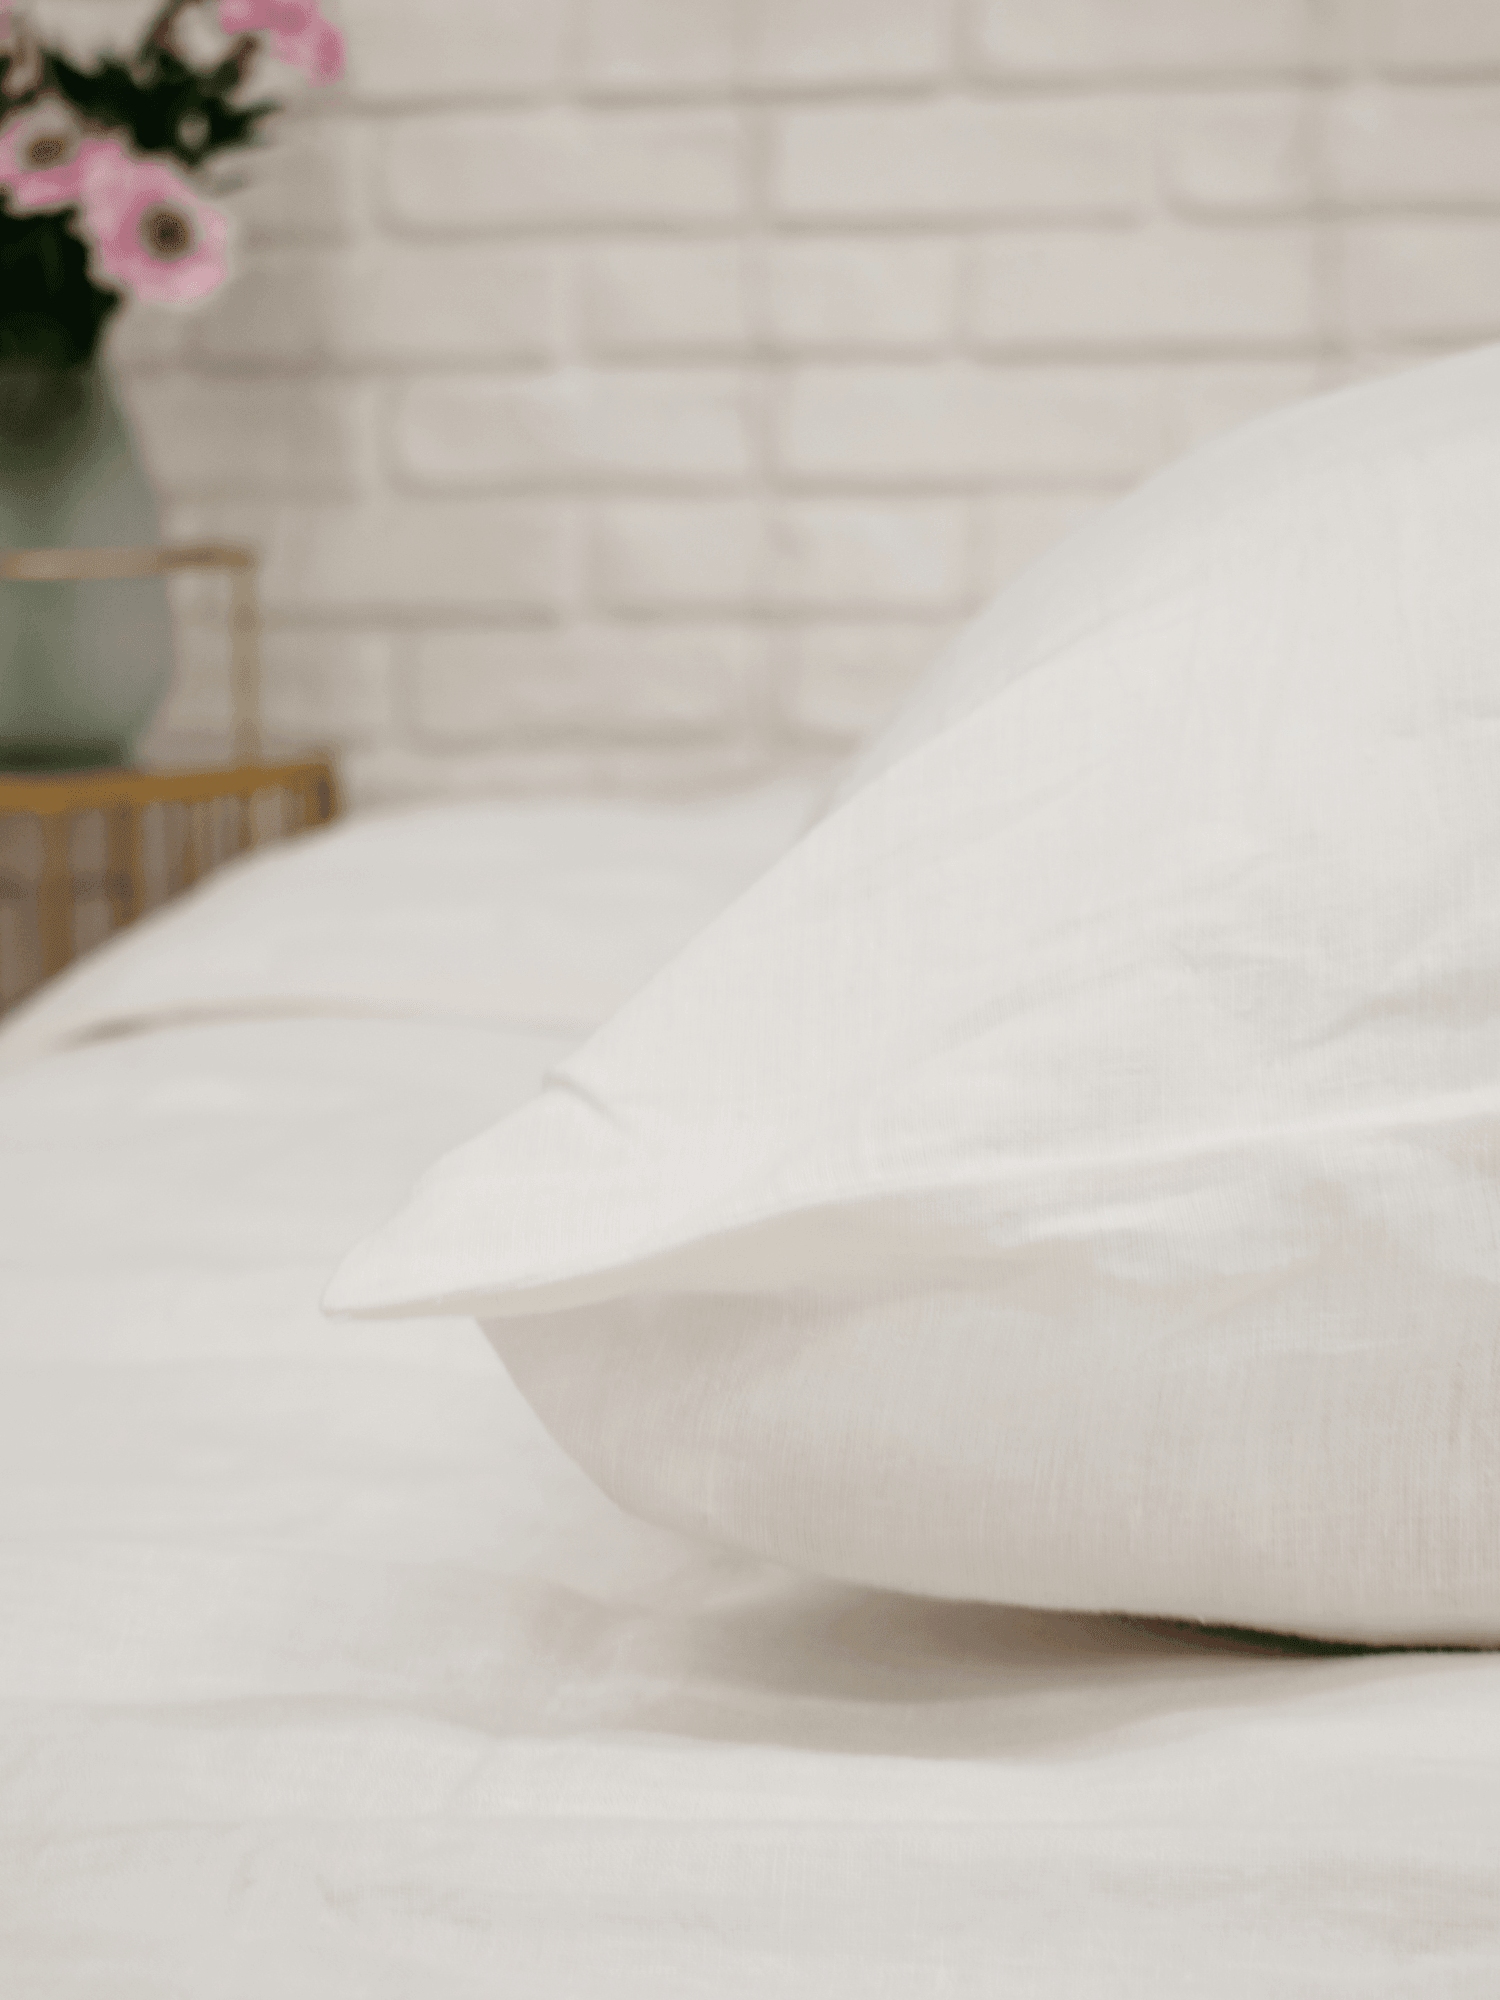 Creame White Linen Pillowcase Set (2 pieces) - Linen pillowcase, Pillowcase set - FlaxLin Eco Textiles